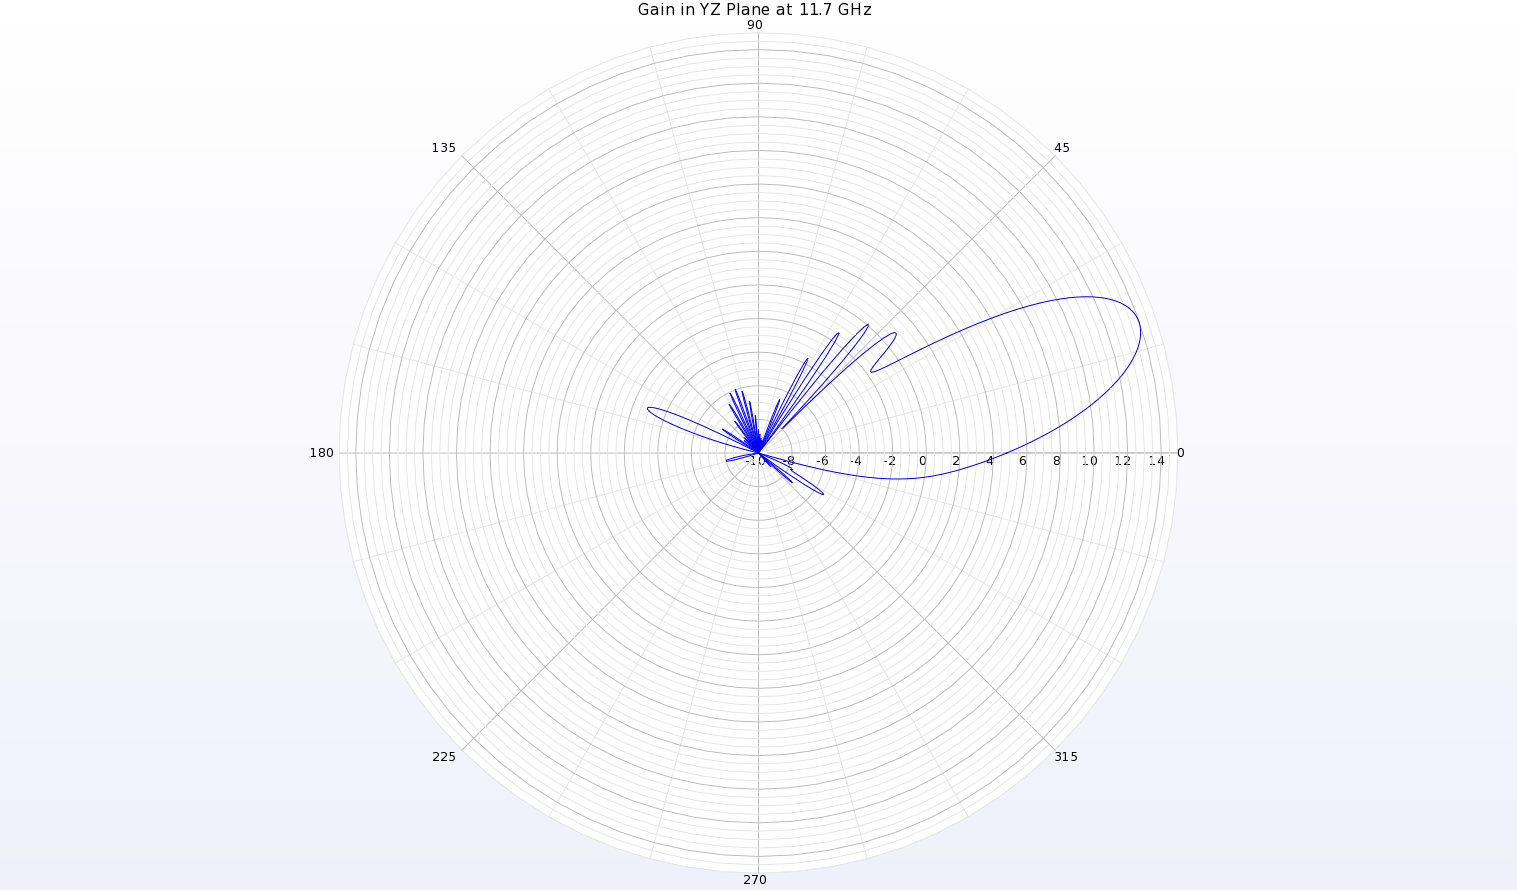 Figura 16: Un diagrama polar del diagrama de ganancia a 11,7 GHz en el plano YZ de la antena muestra un haz en theta=19 grados con una ganancia de pico de 14 dBi.